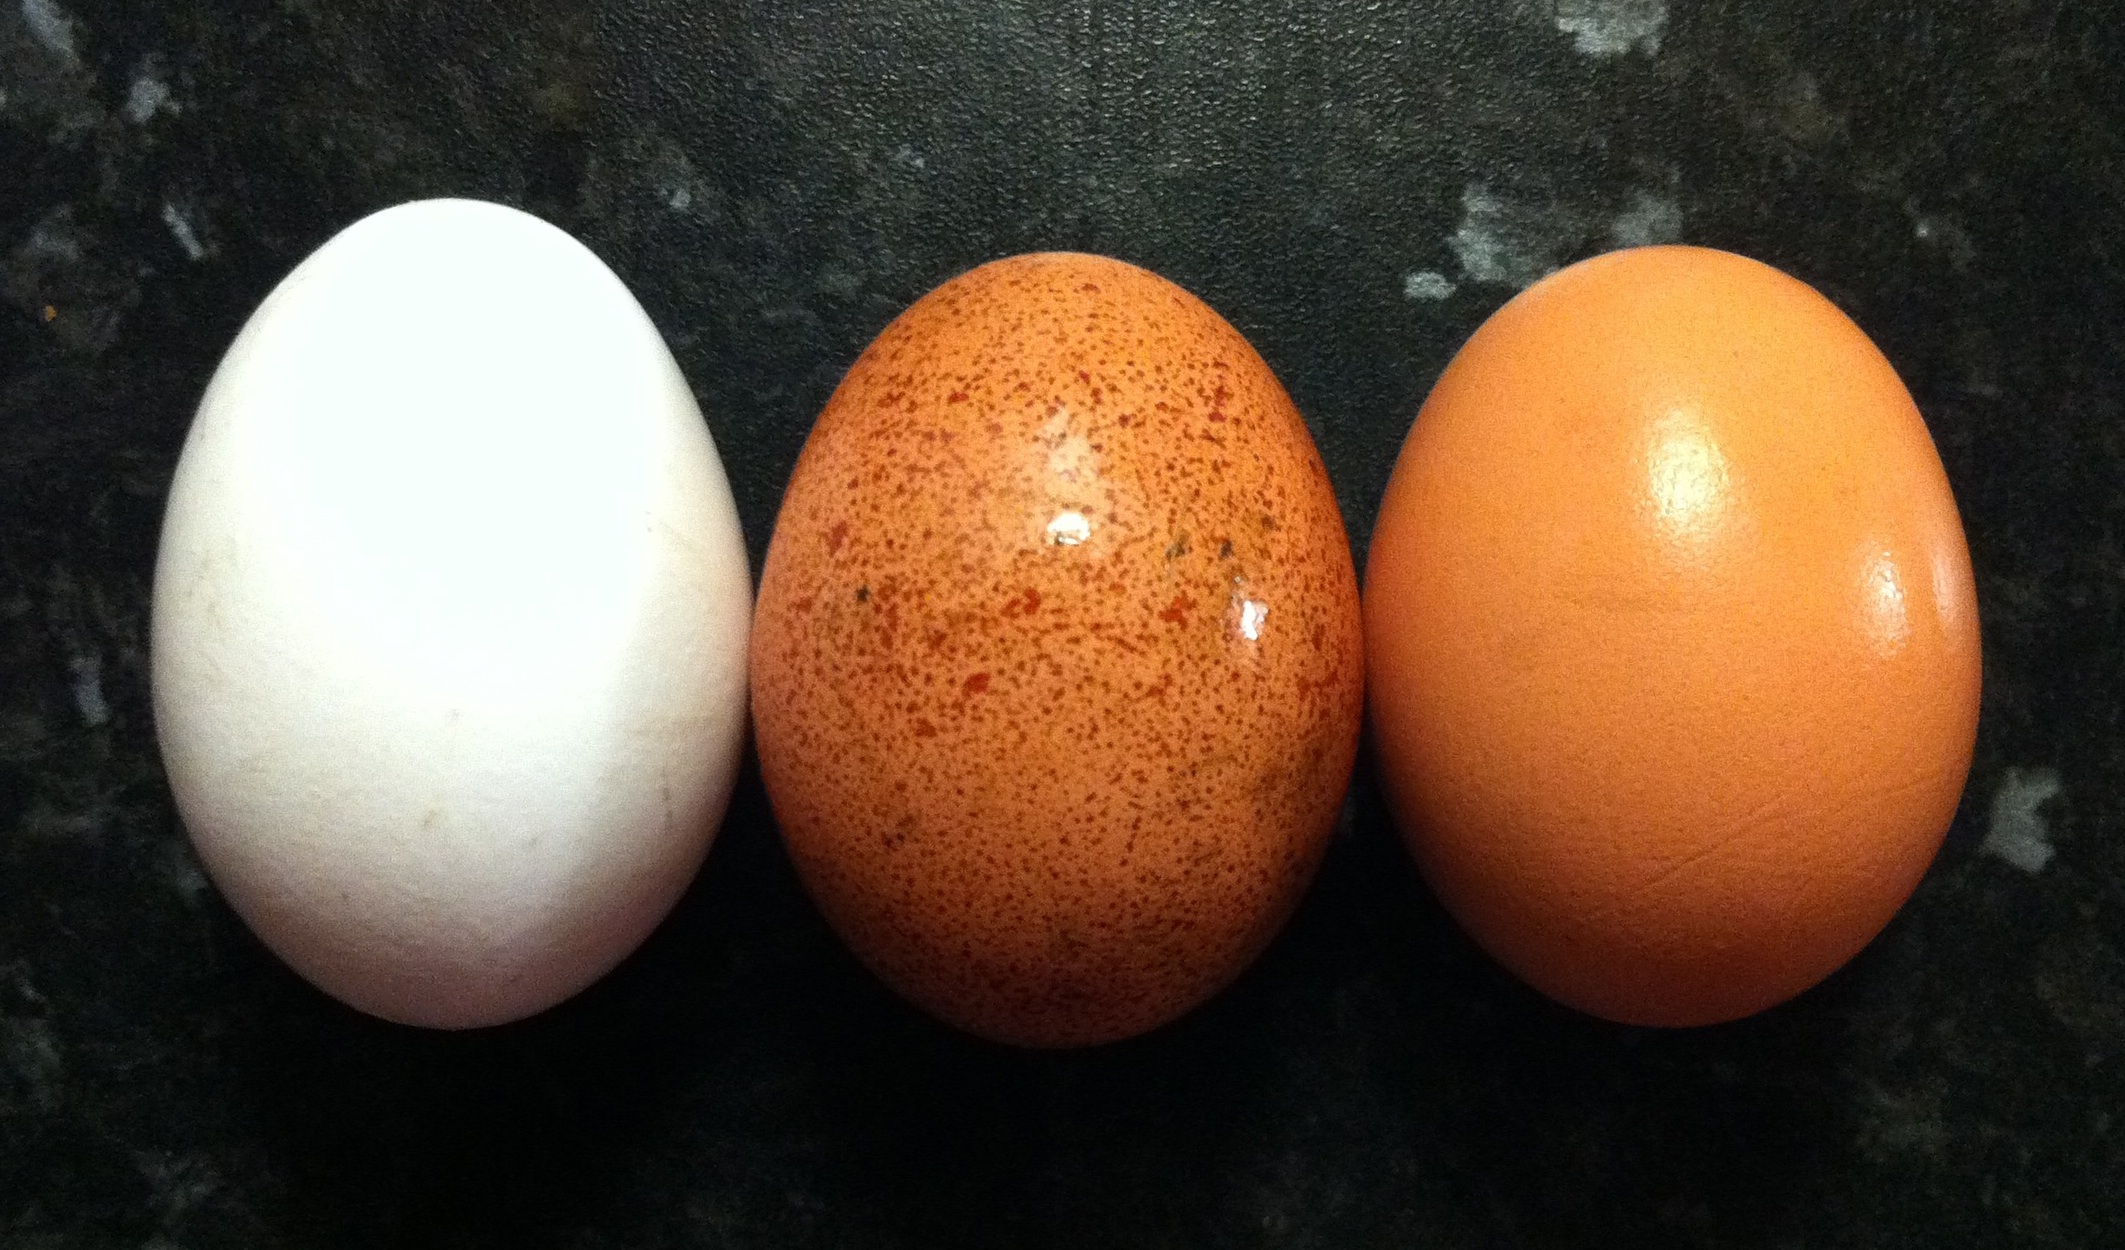 تخم مرغ سالم و خراب - تخم مرغ سفید